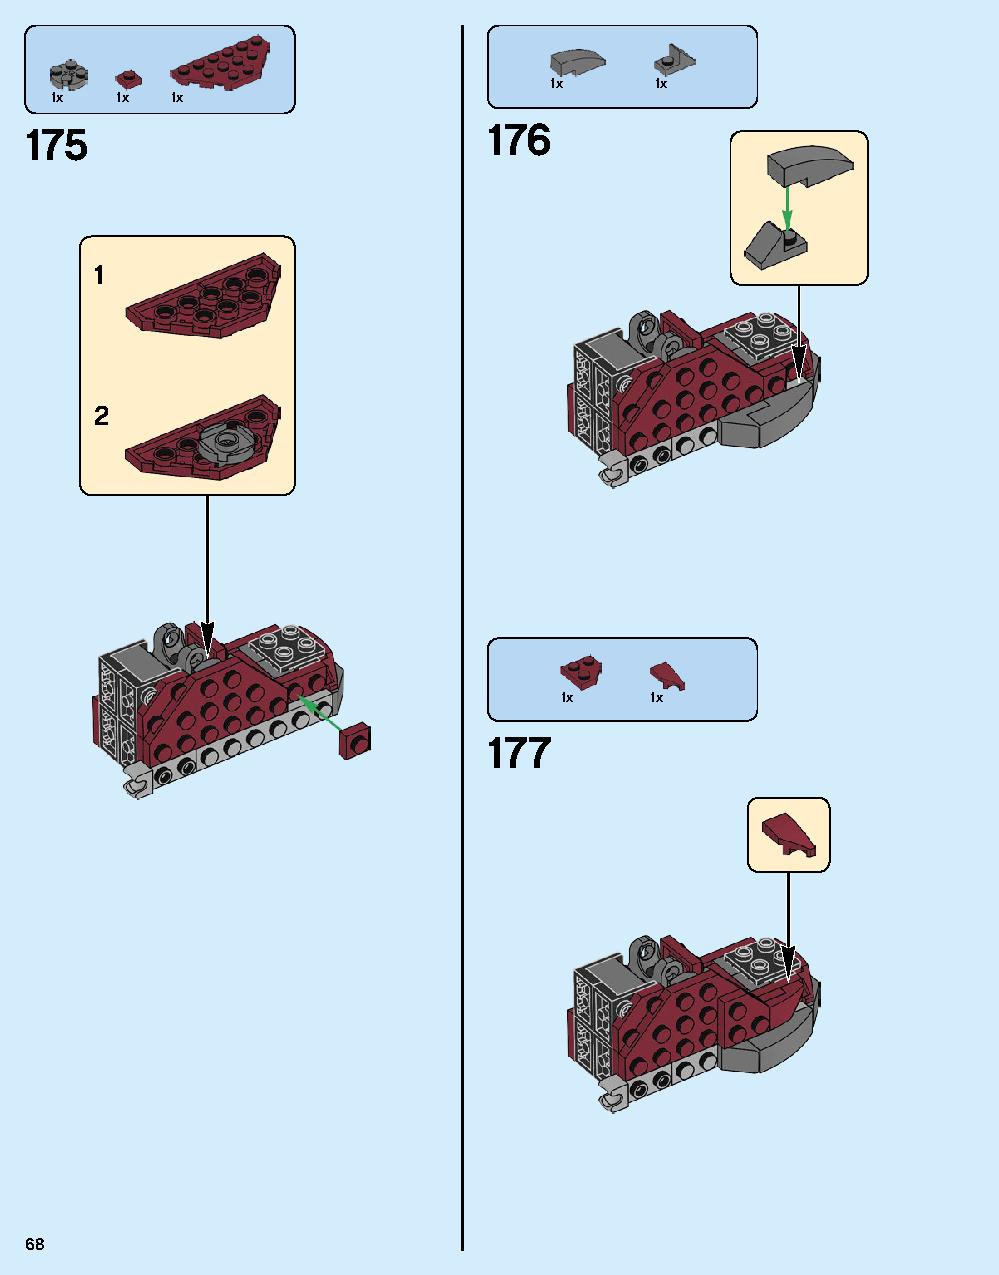 ハルクバスター：ウルトロン・エディション 76105 レゴの商品情報 レゴの説明書・組立方法 68 page